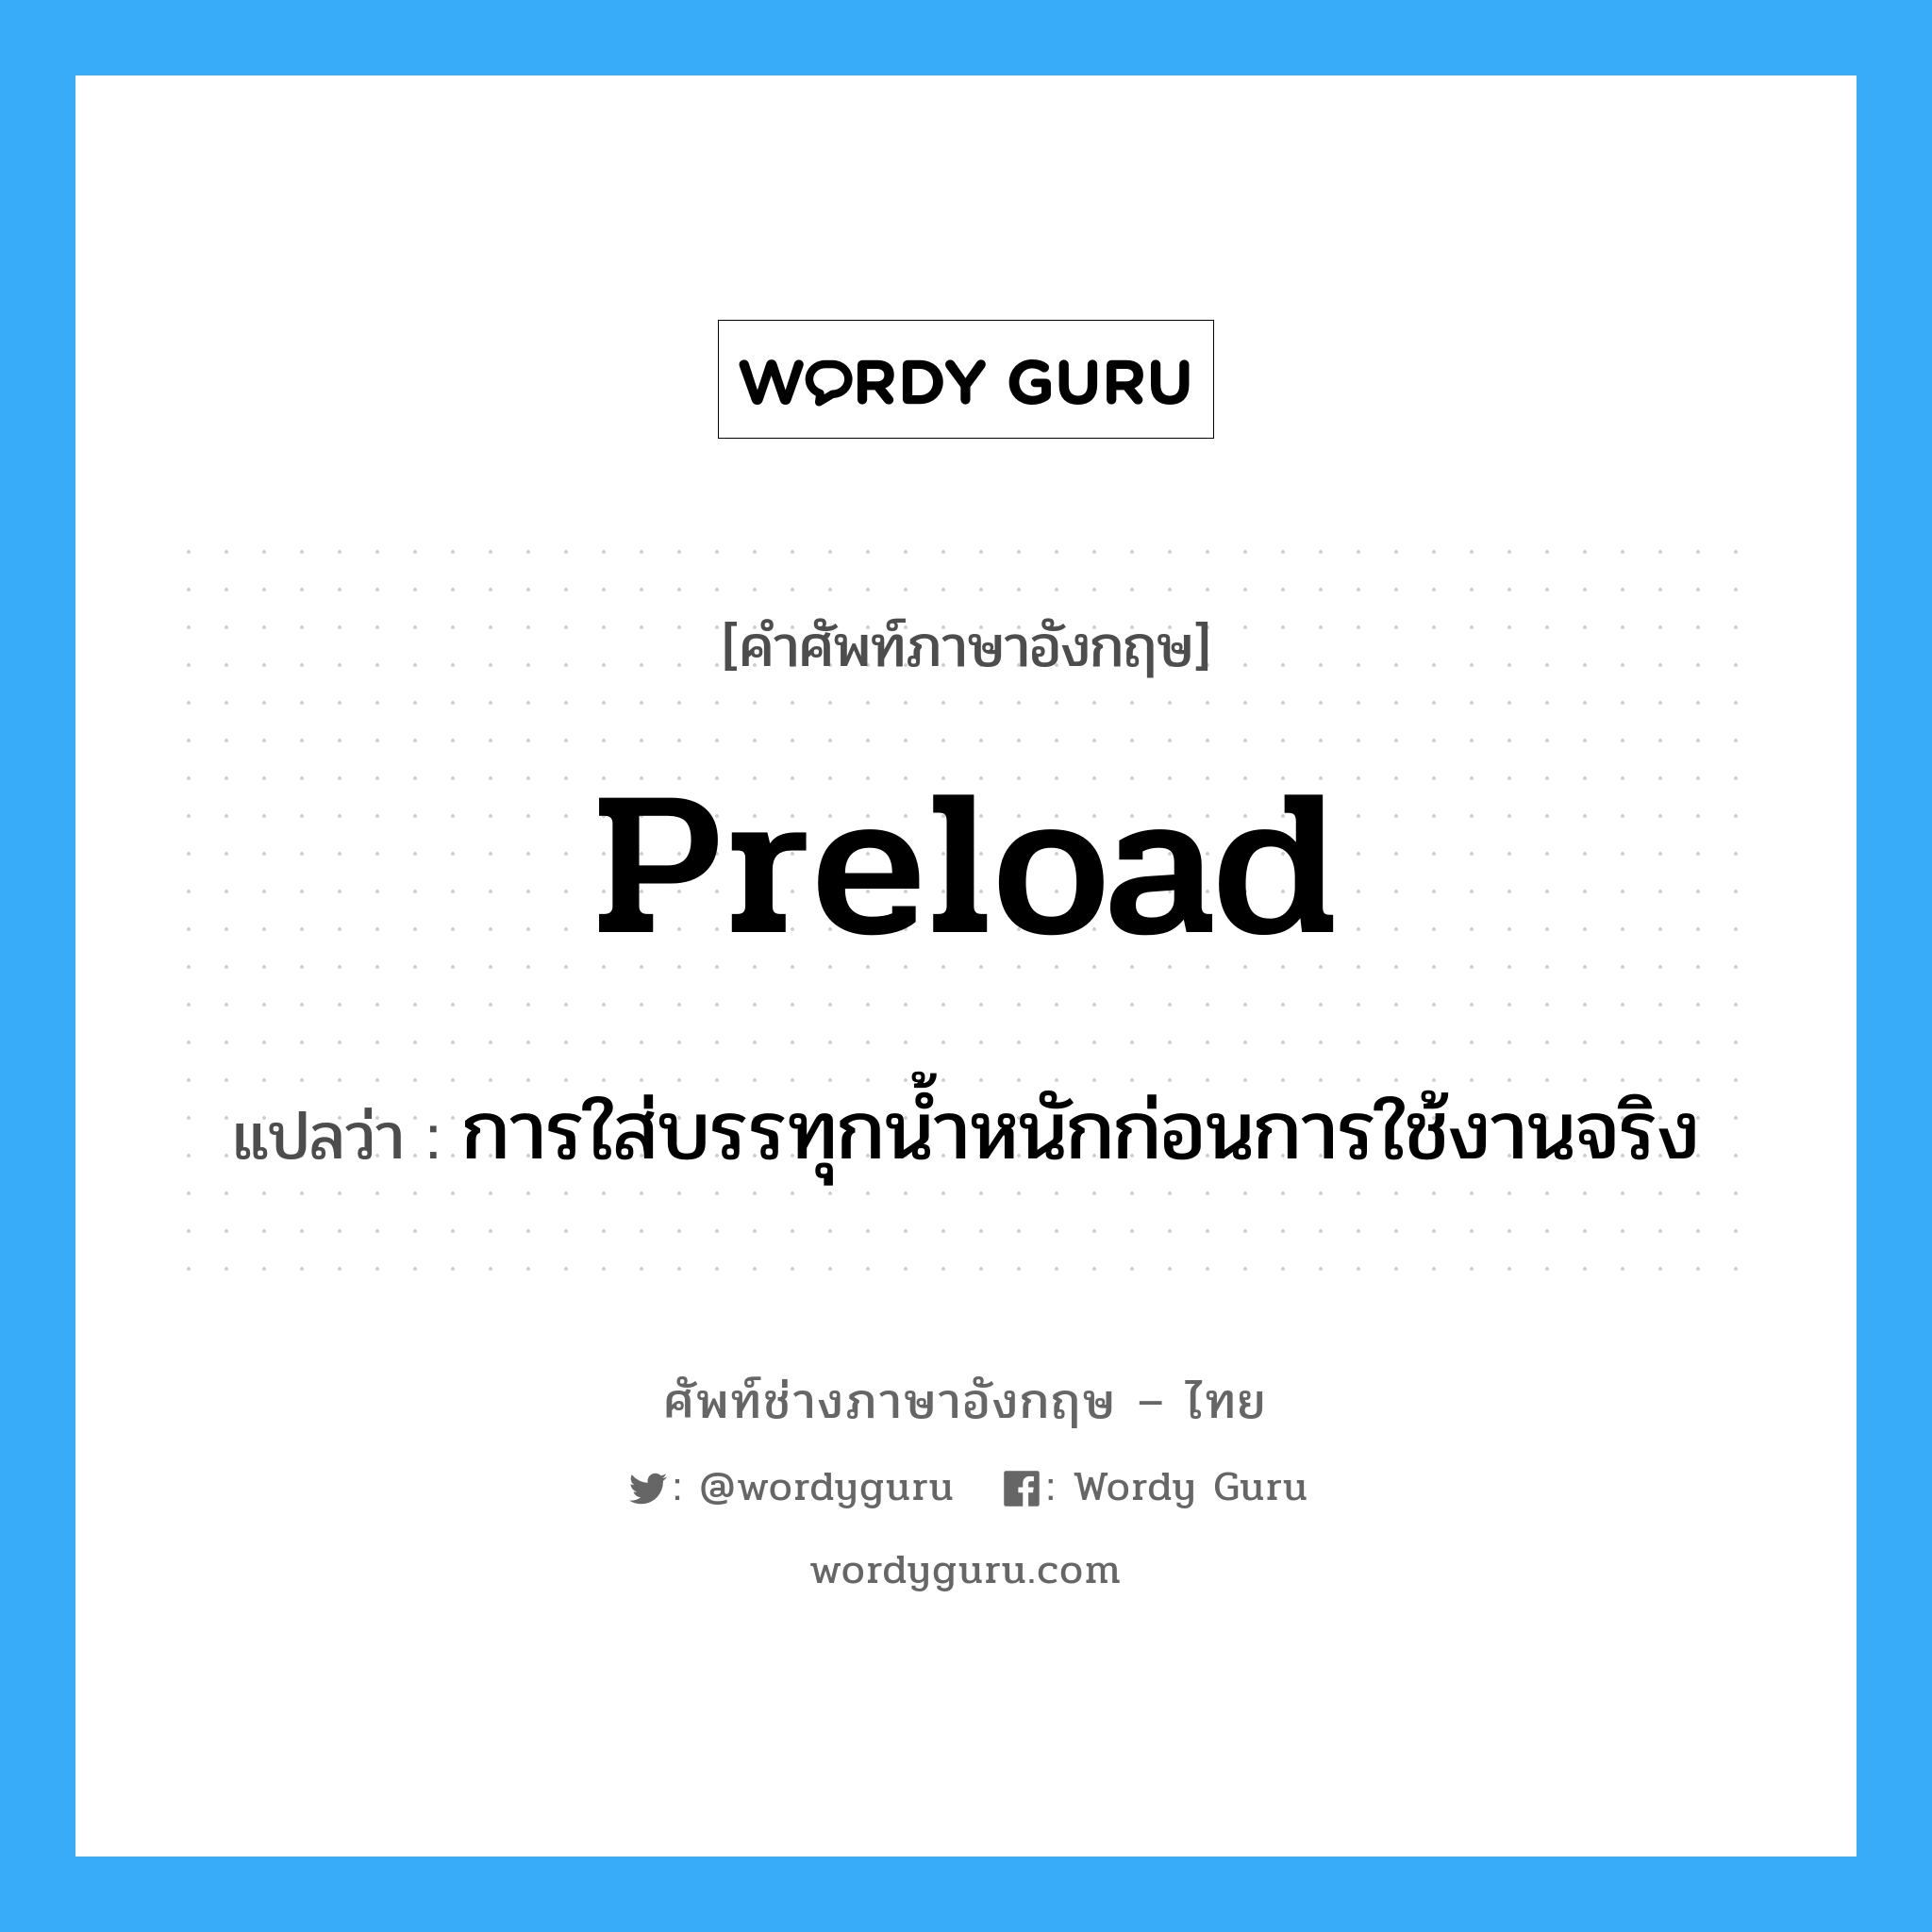 preload แปลว่า?, คำศัพท์ช่างภาษาอังกฤษ - ไทย preload คำศัพท์ภาษาอังกฤษ preload แปลว่า การใส่บรรทุกน้ำหนักก่อนการใช้งานจริง